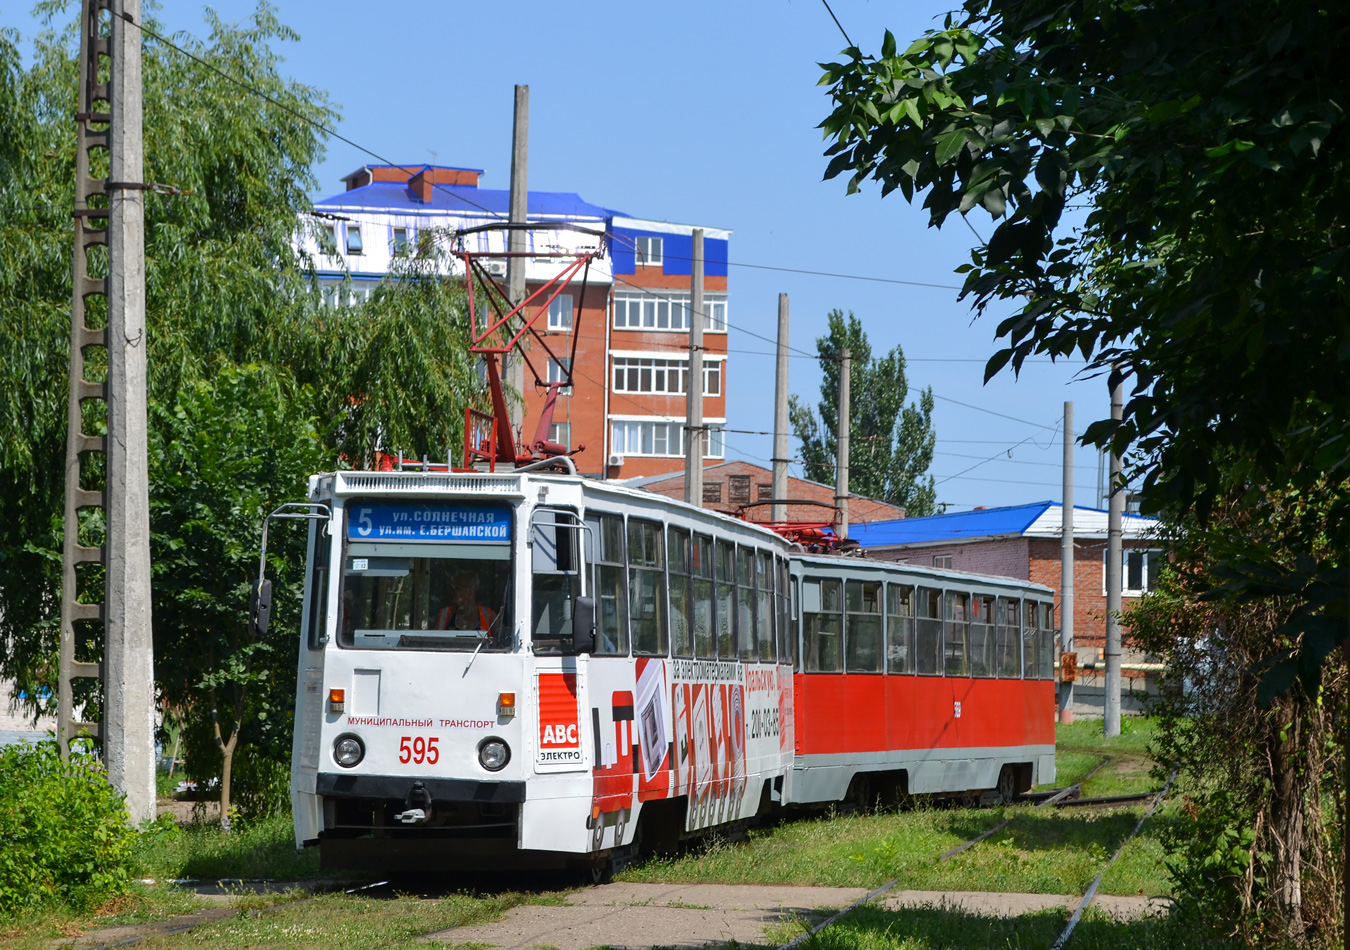 Krasnodar, 71-605 (KTM-5M3) Nr. 595